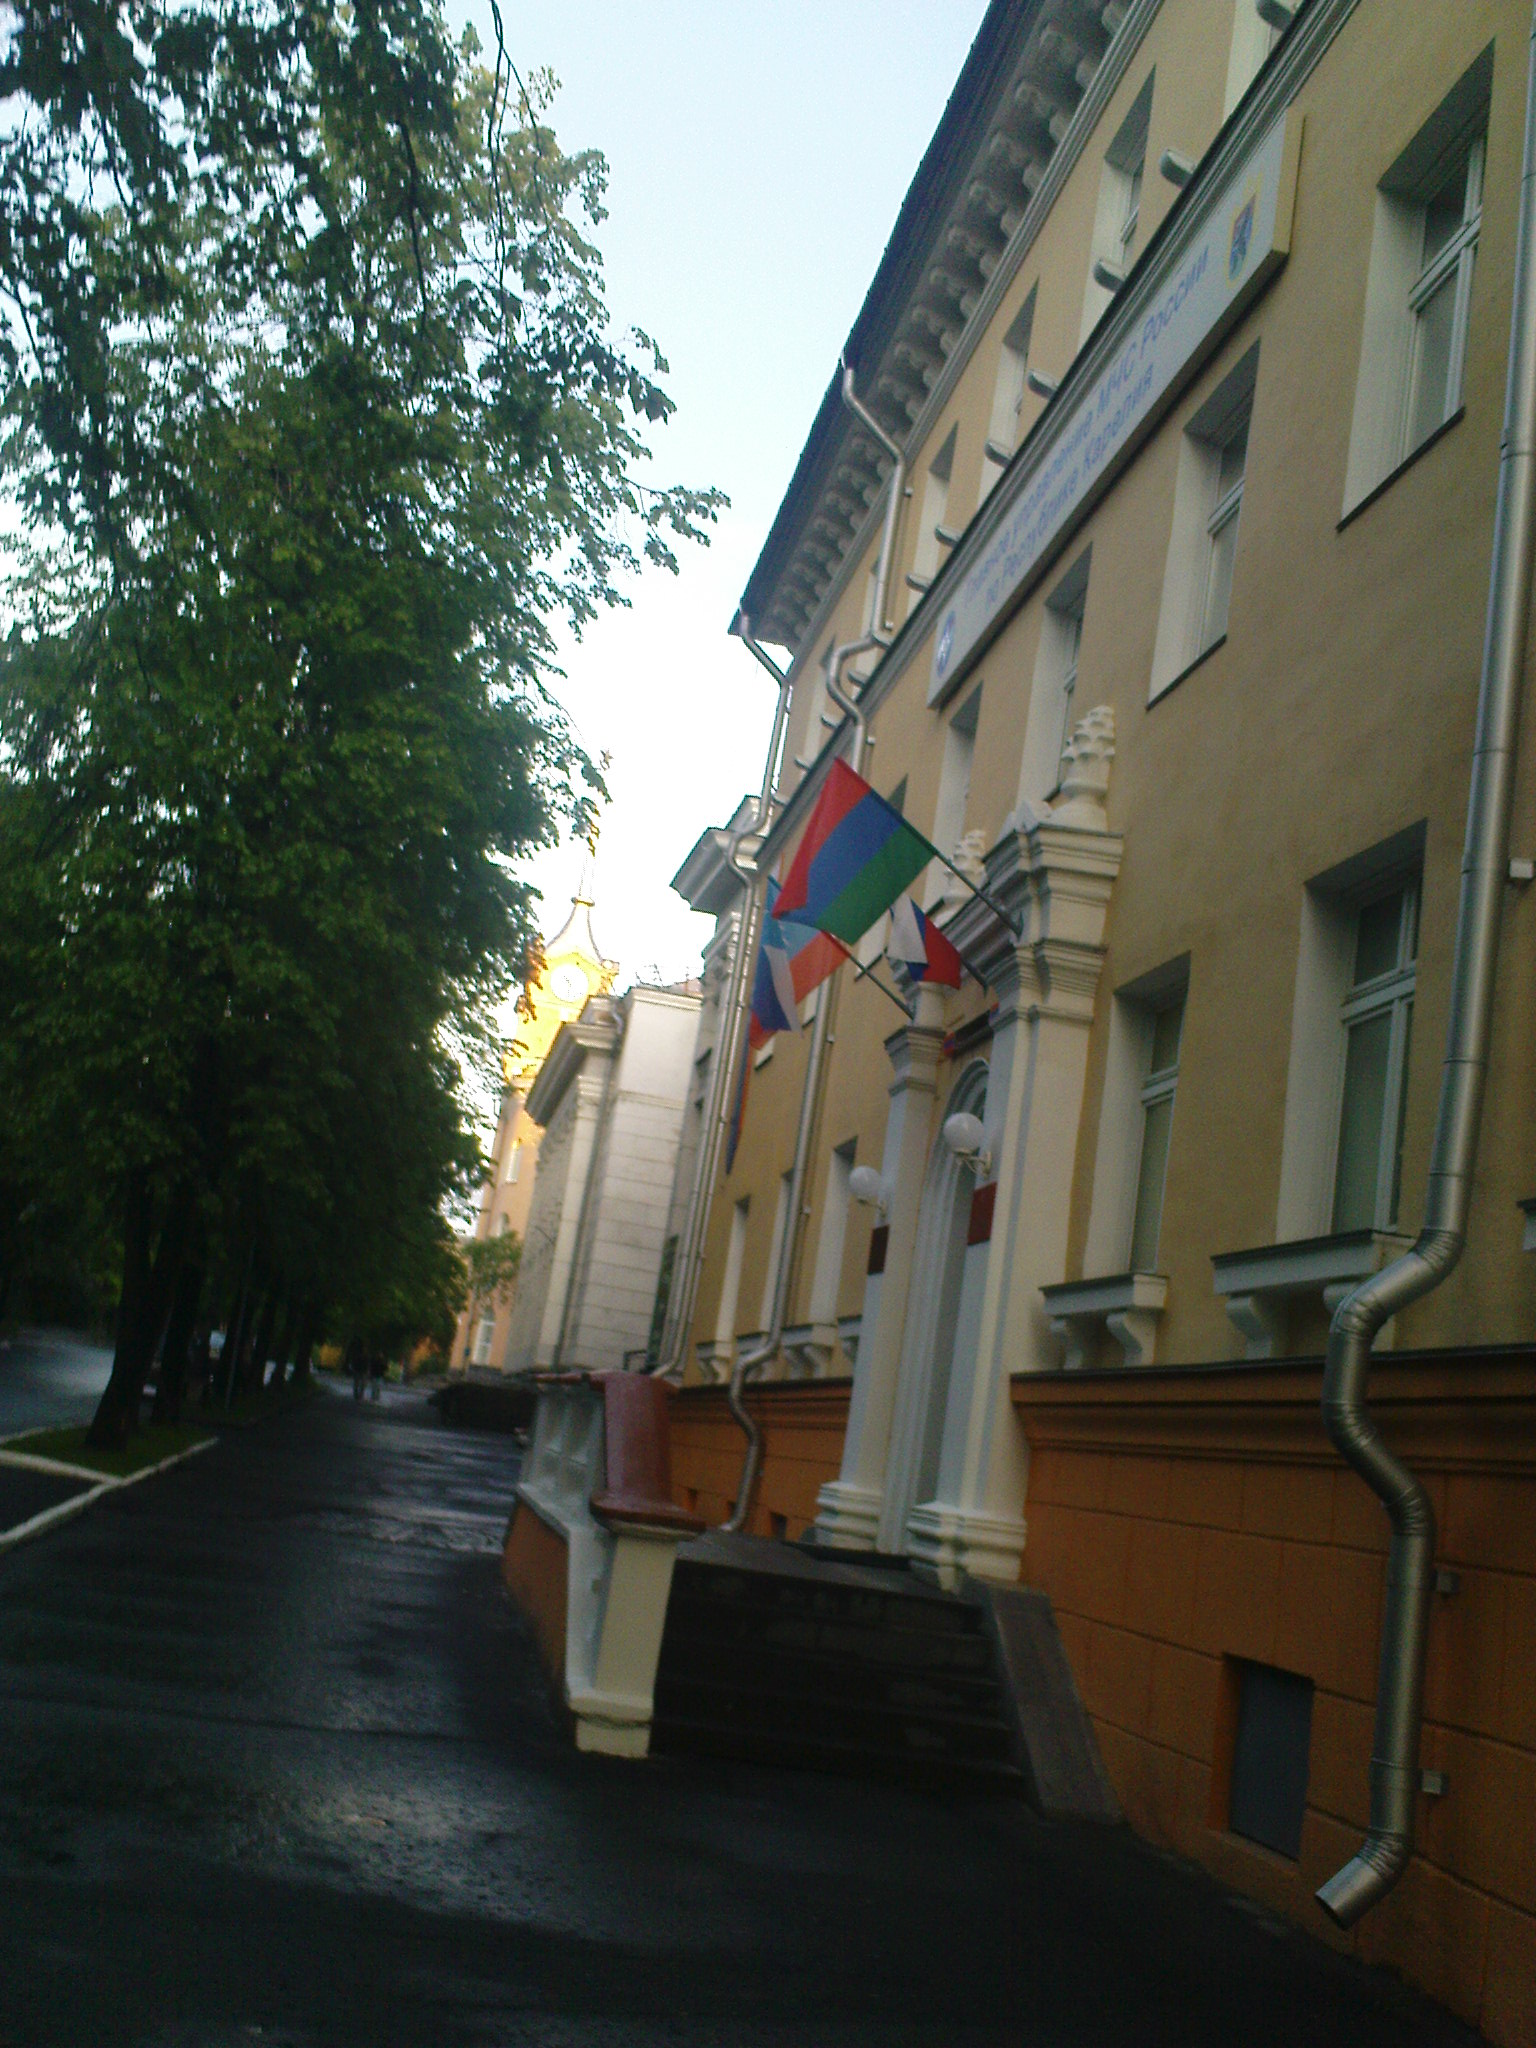 Флаг Петрозаводска на доме. Петрозаводск. Июнь 2010 года. Фото: А.Хохлов